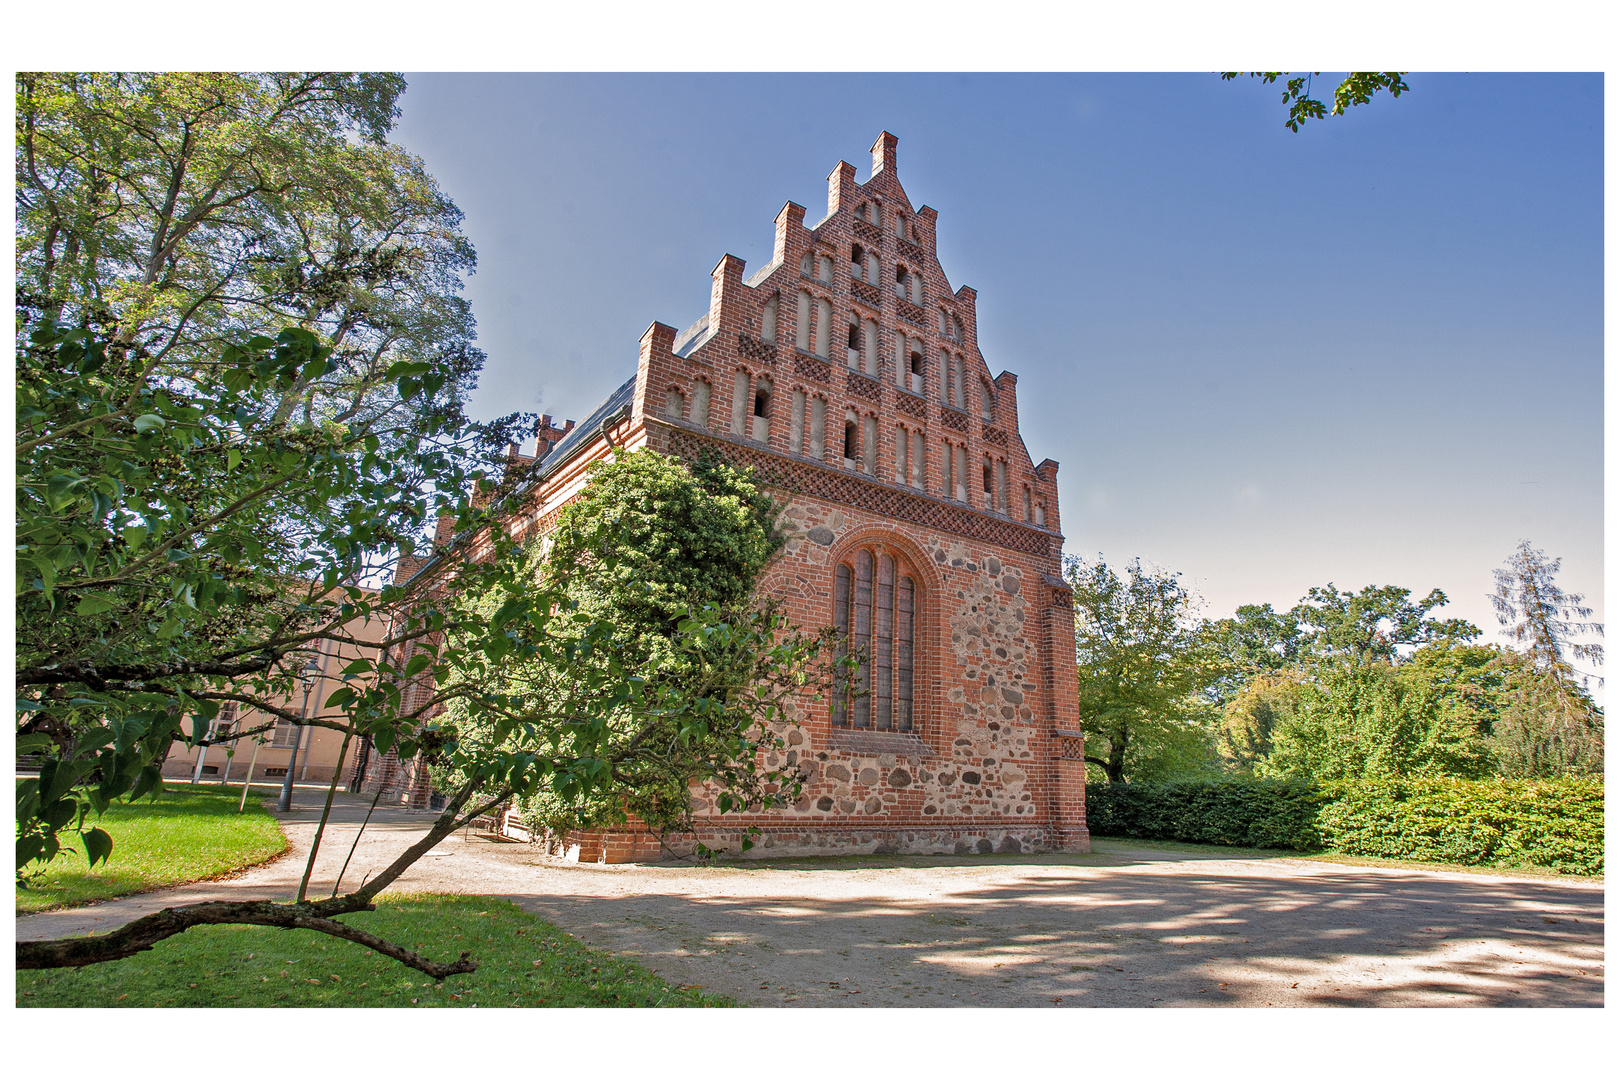  Kloster Brandenburg